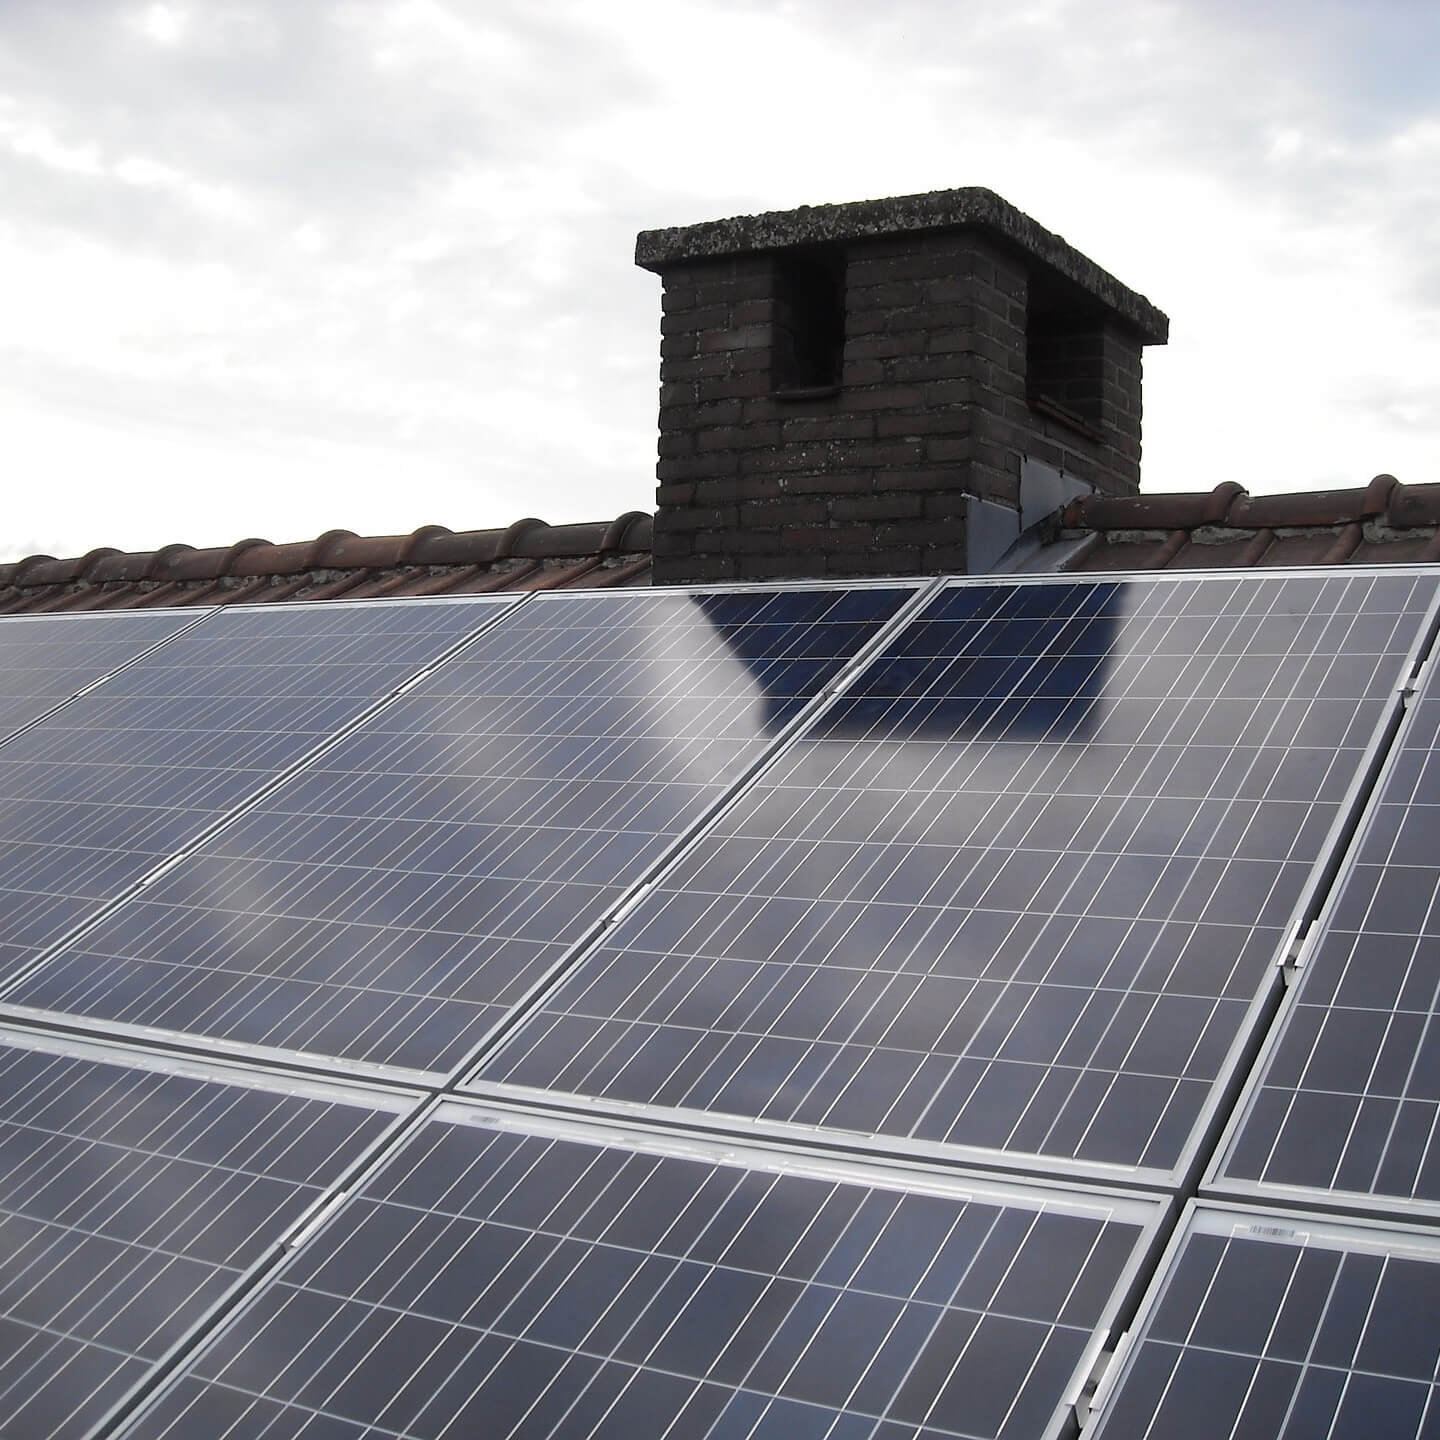 Dach z panelami słonecznymi